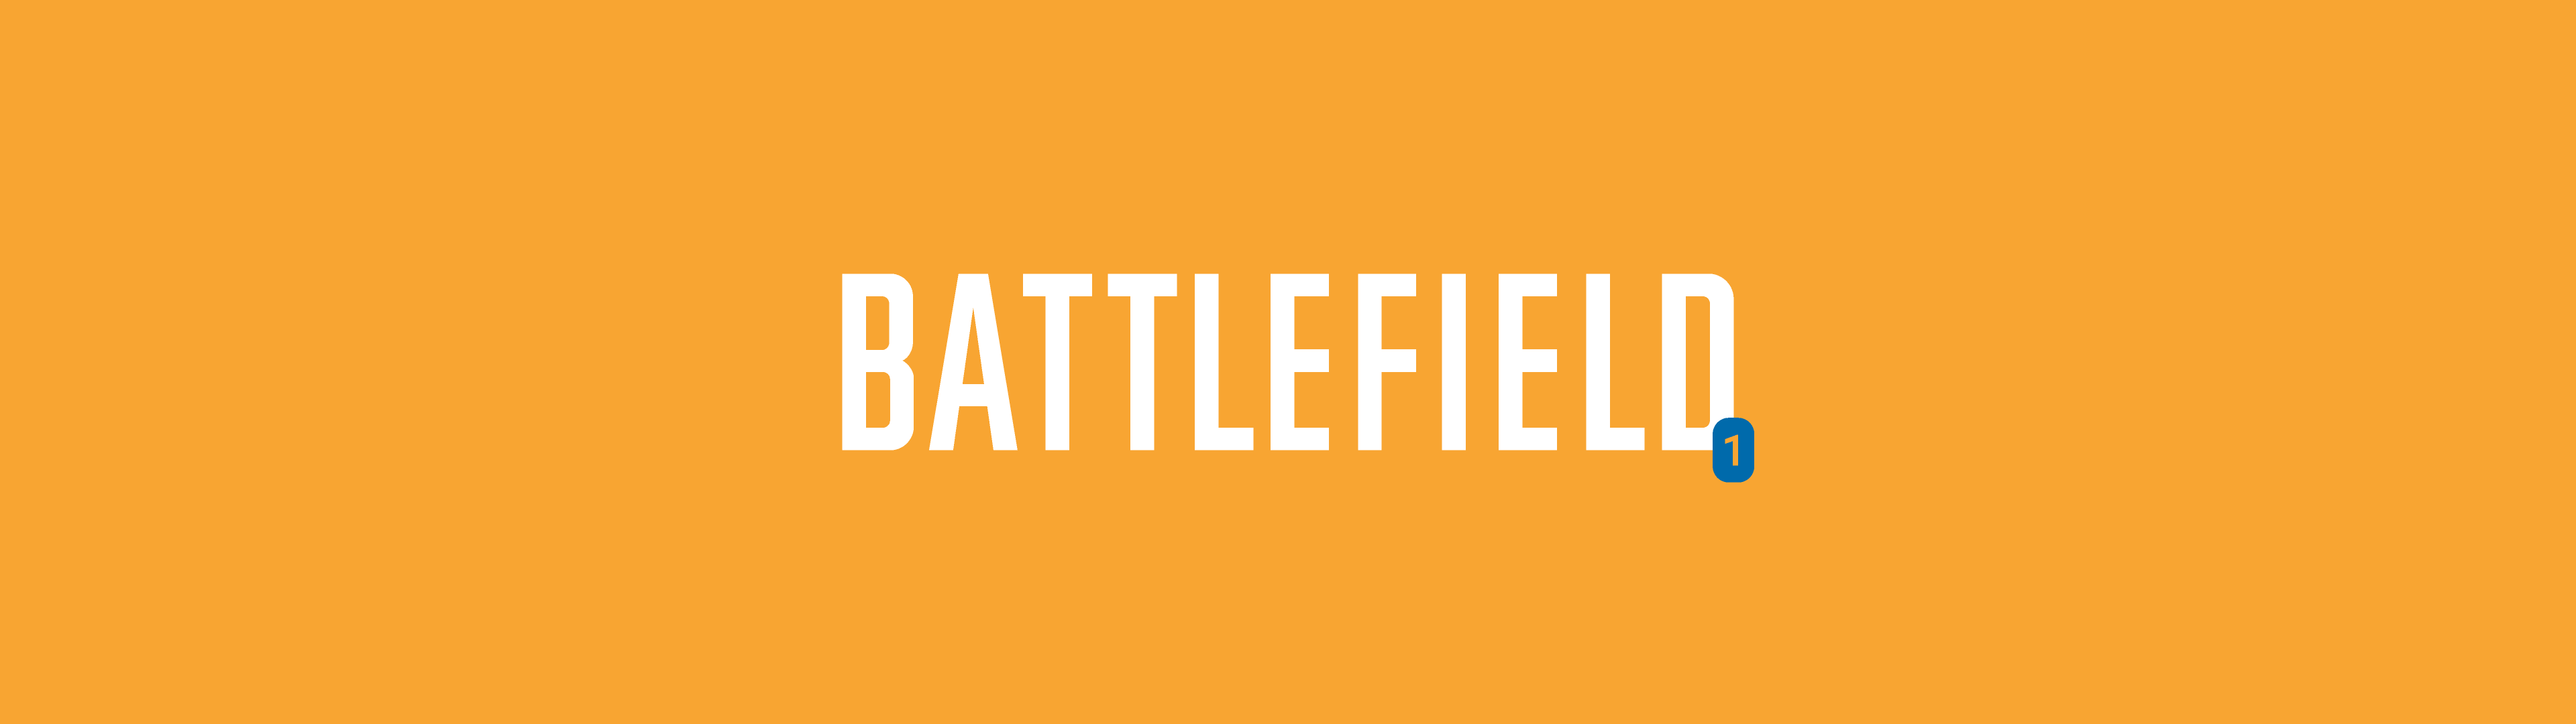 Illustration représentant le logo de Battlefield